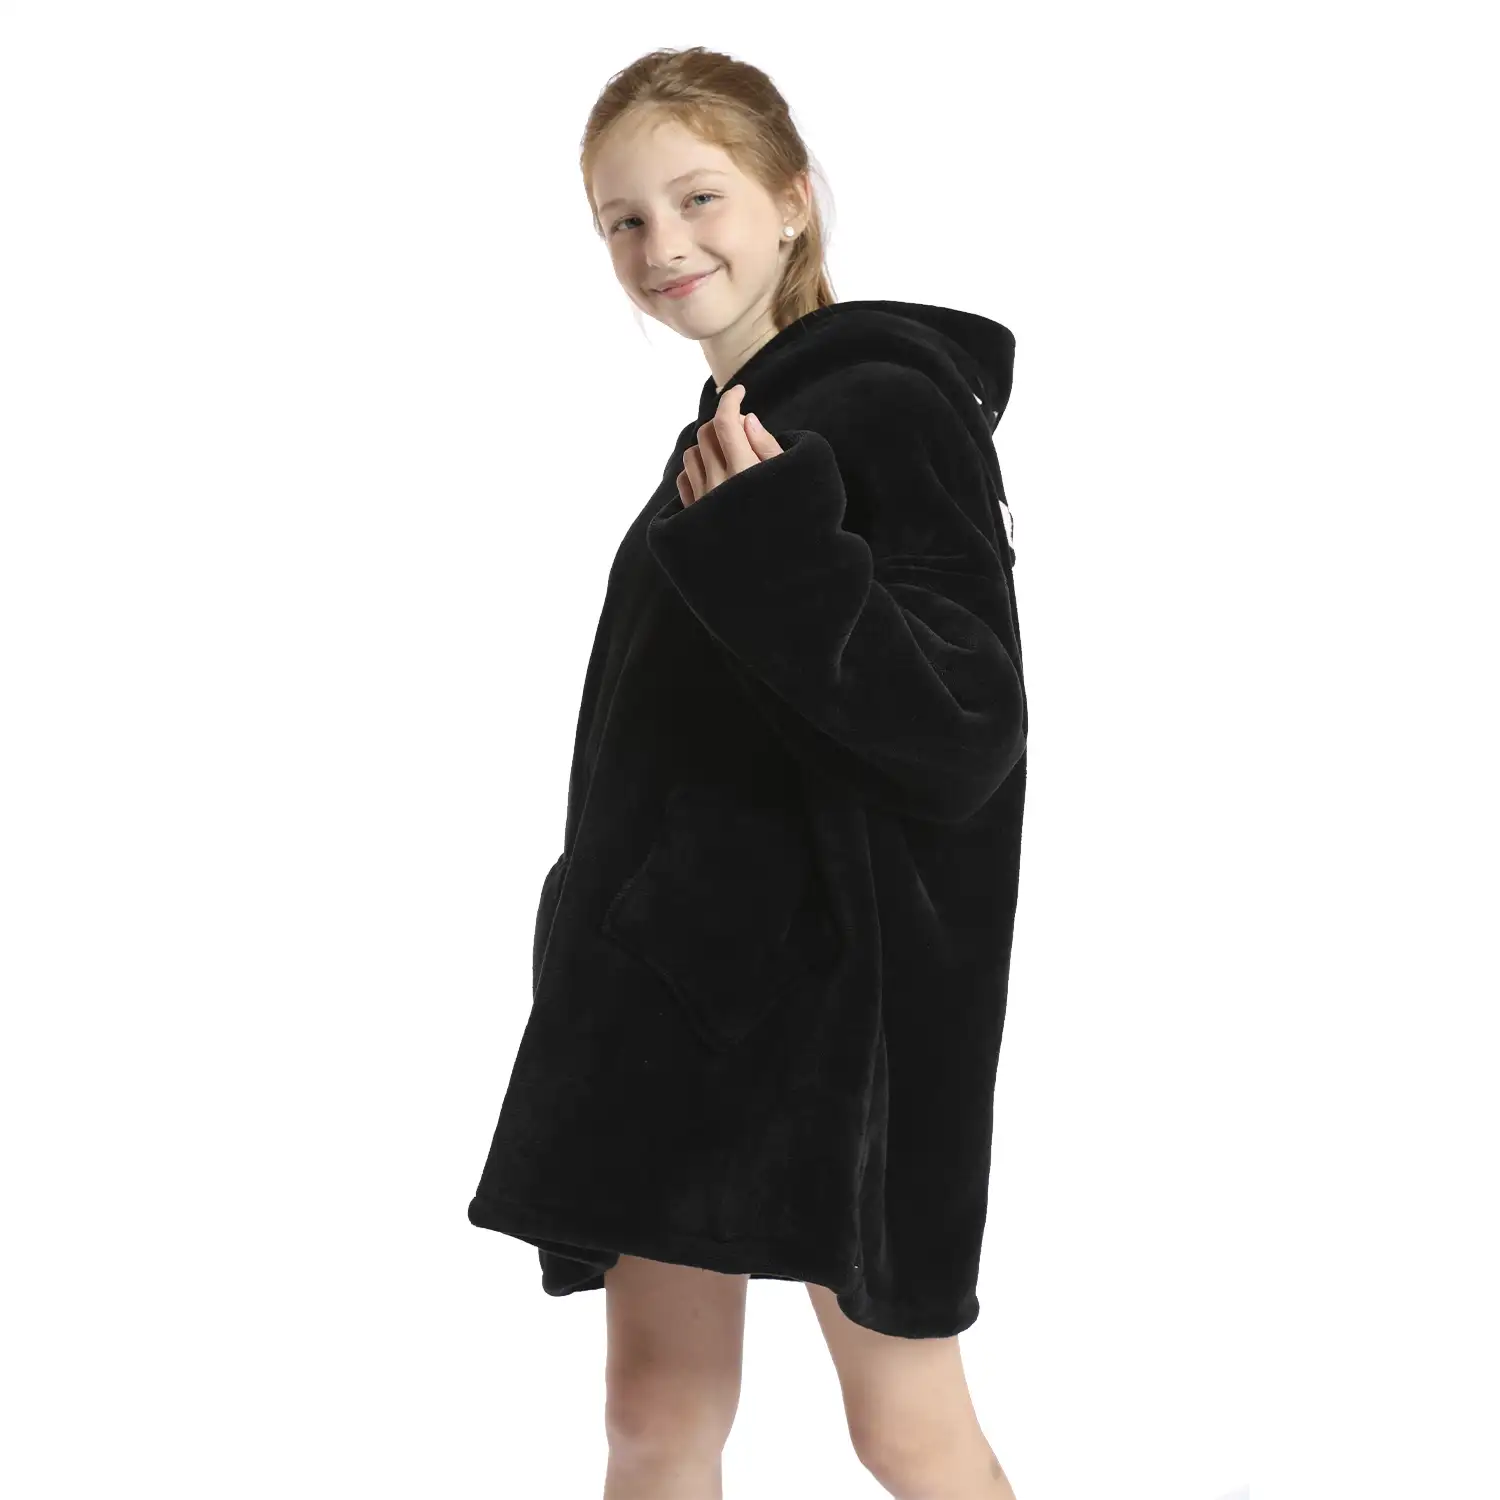 Bata infantil estilo sudadera y manta de felpa extrasuave. Bolsillos frontales. Diseño Gatito Negro